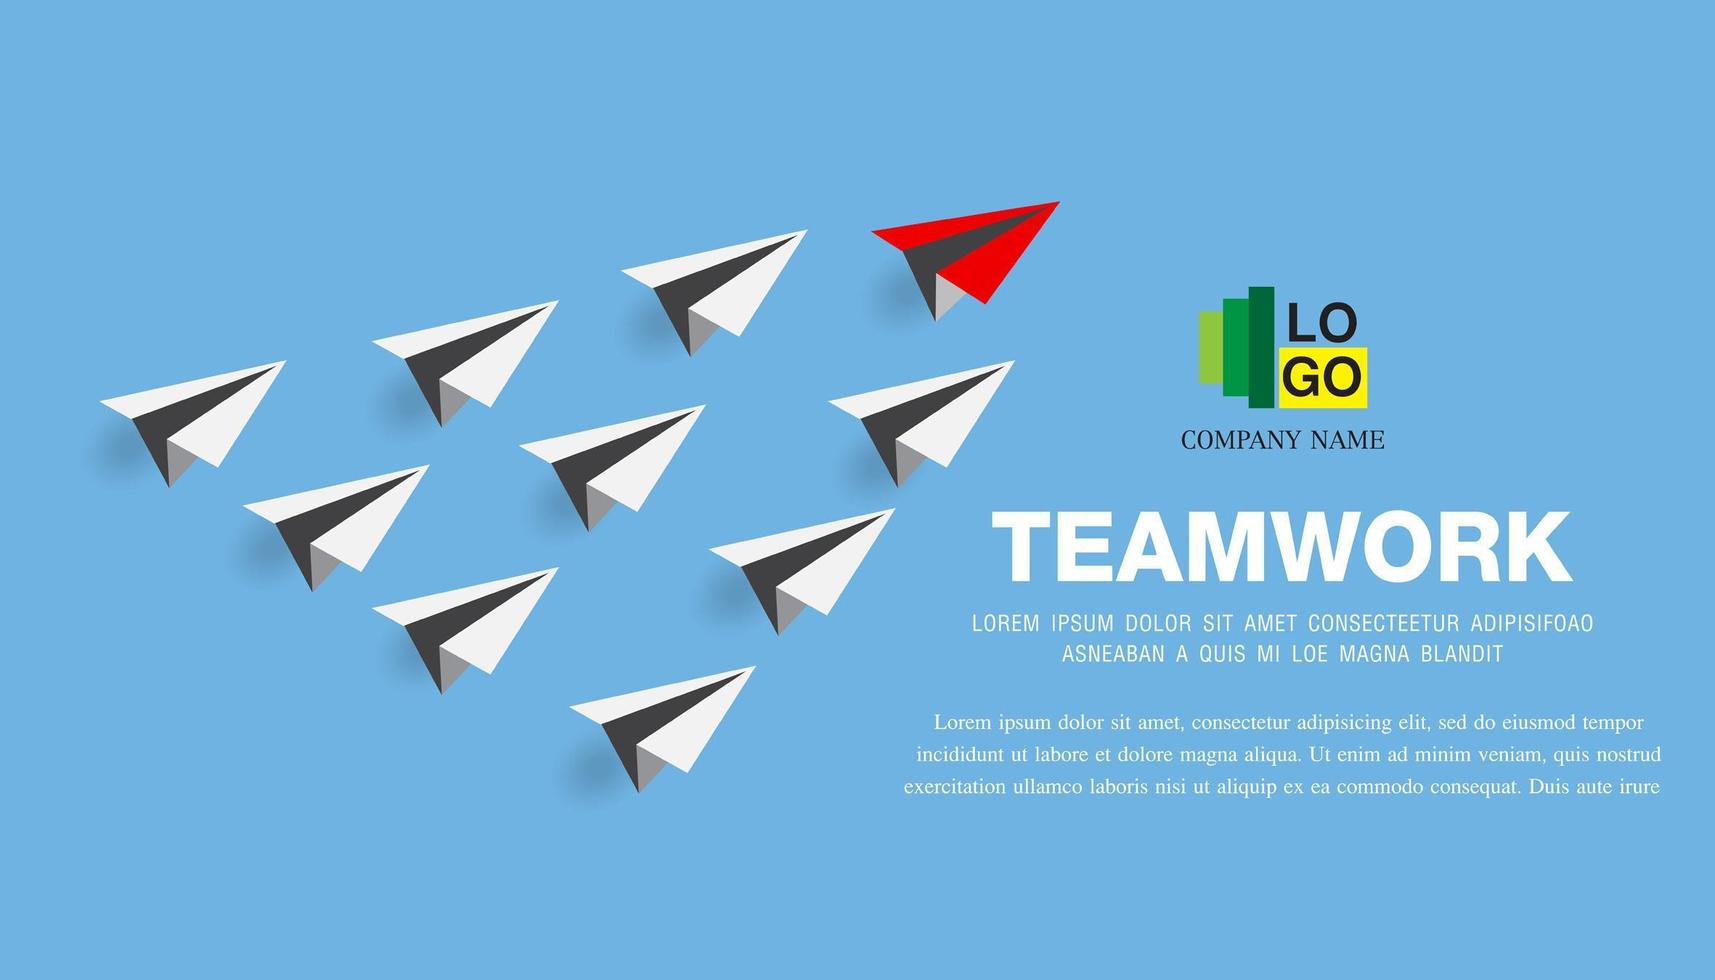 Papierflugzeug als Führer unter anderem, Führung, Teamwork vektor